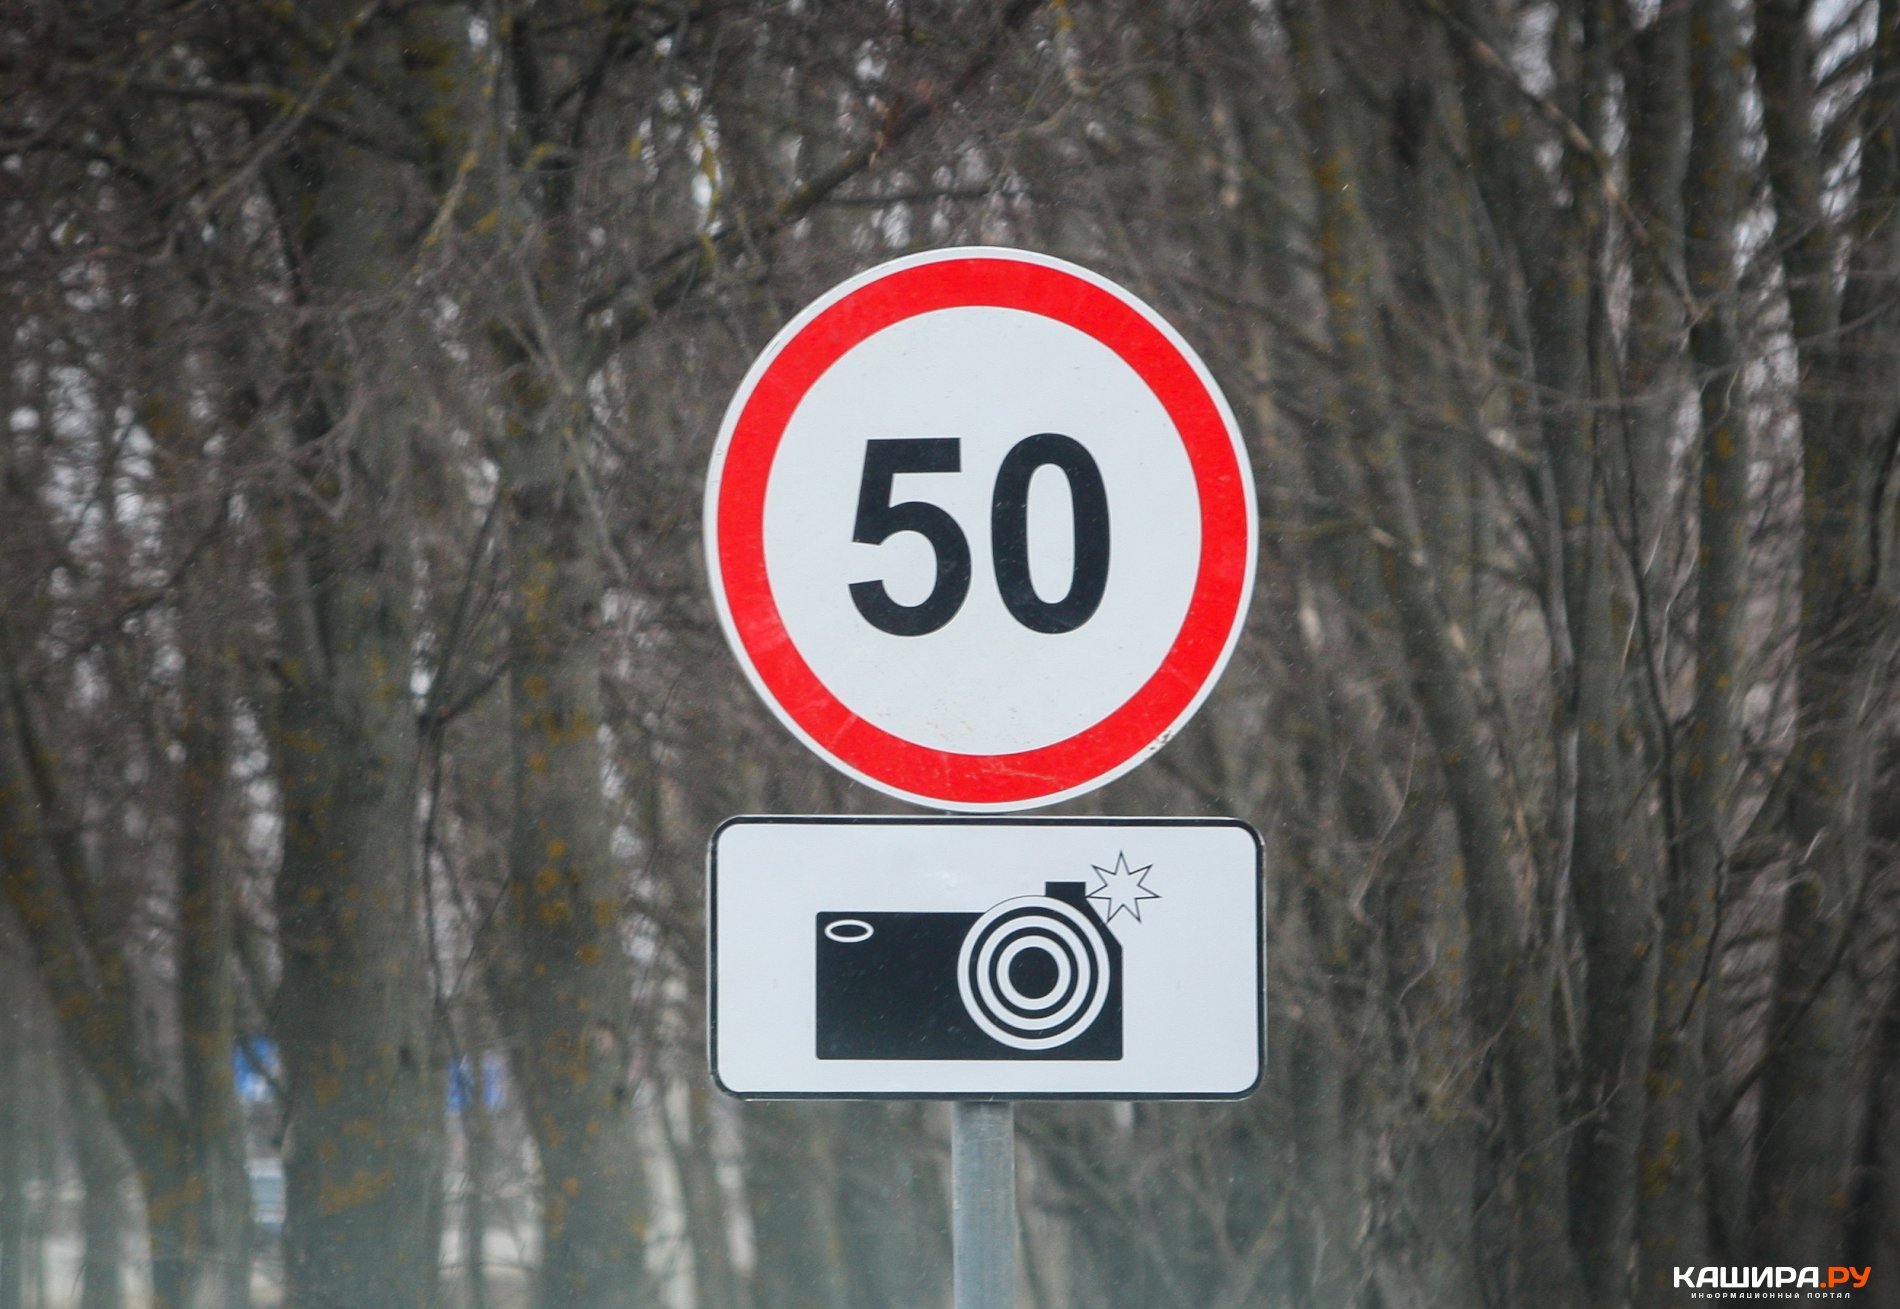 При каких случаях устанавливают знаки ограничения скорости. Дорожный знак 8.23 Фотовидеофиксация. 6.22 Фотовидеофиксация дорожный знак. Знак 3.24 ограничение максимальной скорости 50. Знак ограничение скорости 50 км.